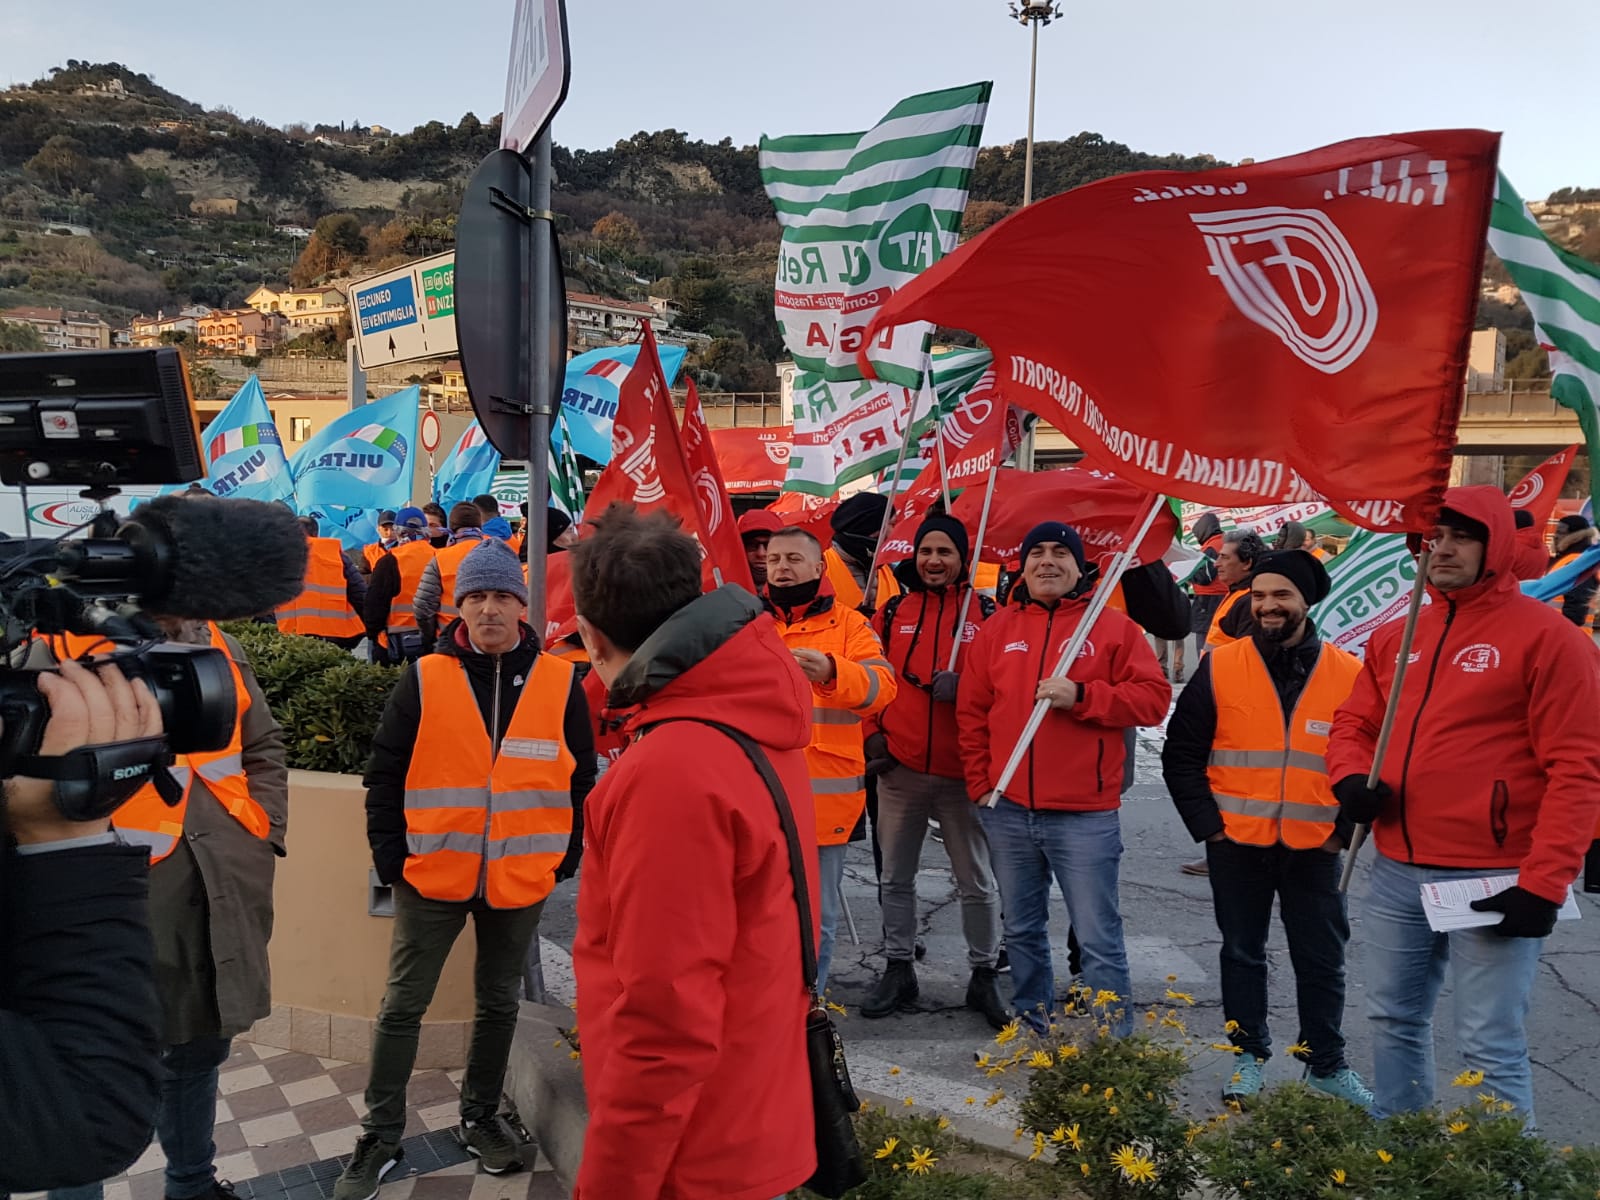 Autoporto Ventimiglia protesta autotrasportatori_04